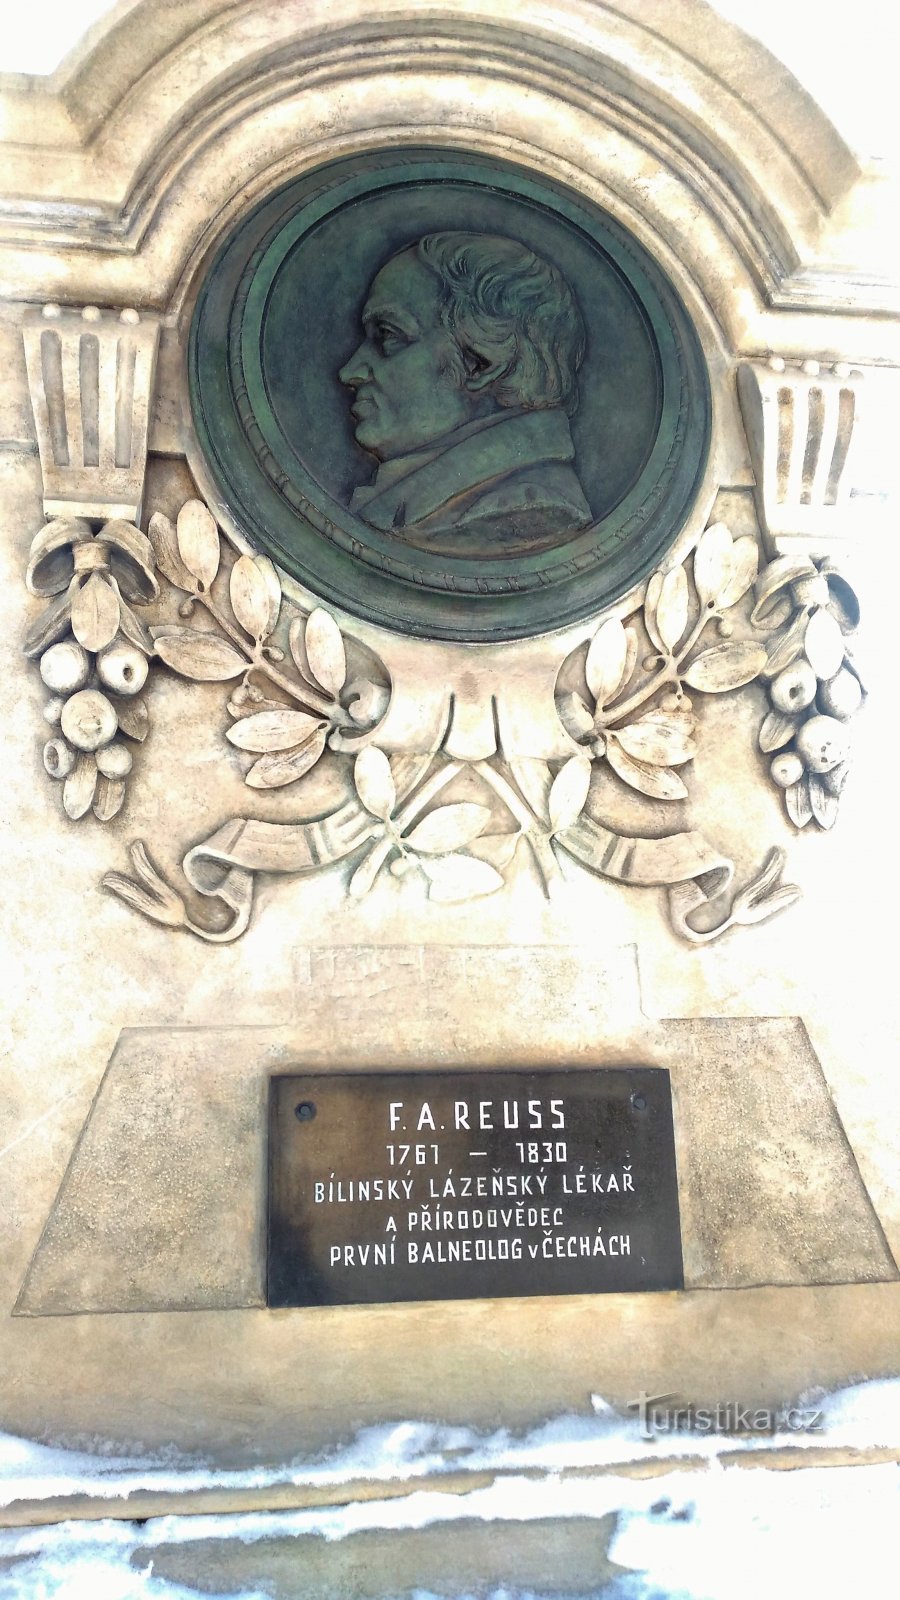 Памятник Ройссу